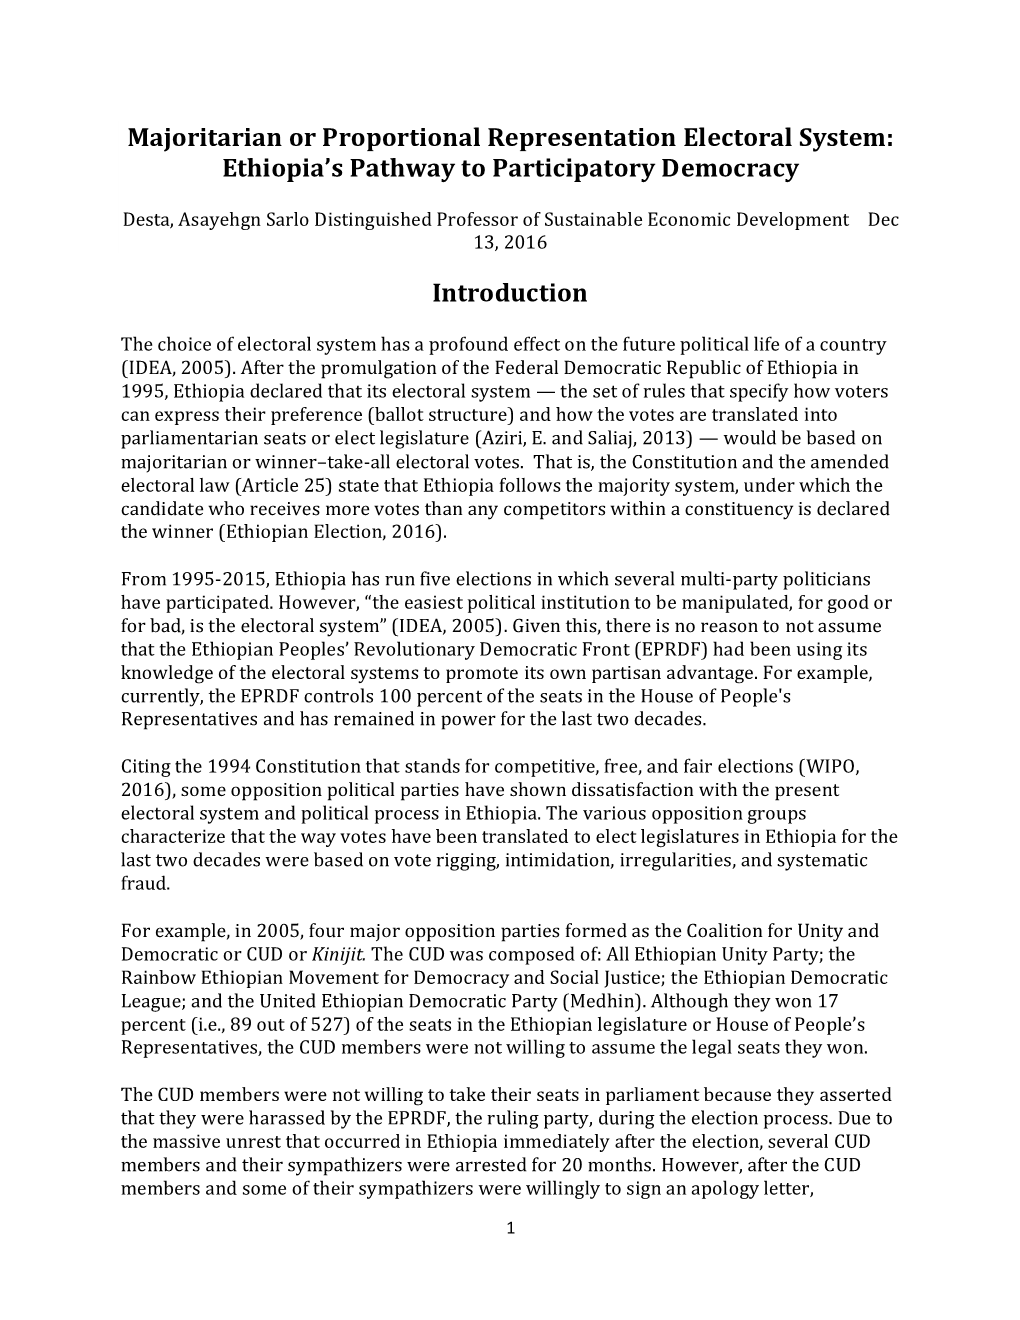 Majoritarian Or Proportional Representation Electoral System: Ethiopia’S Pathway to Participatory Democracy